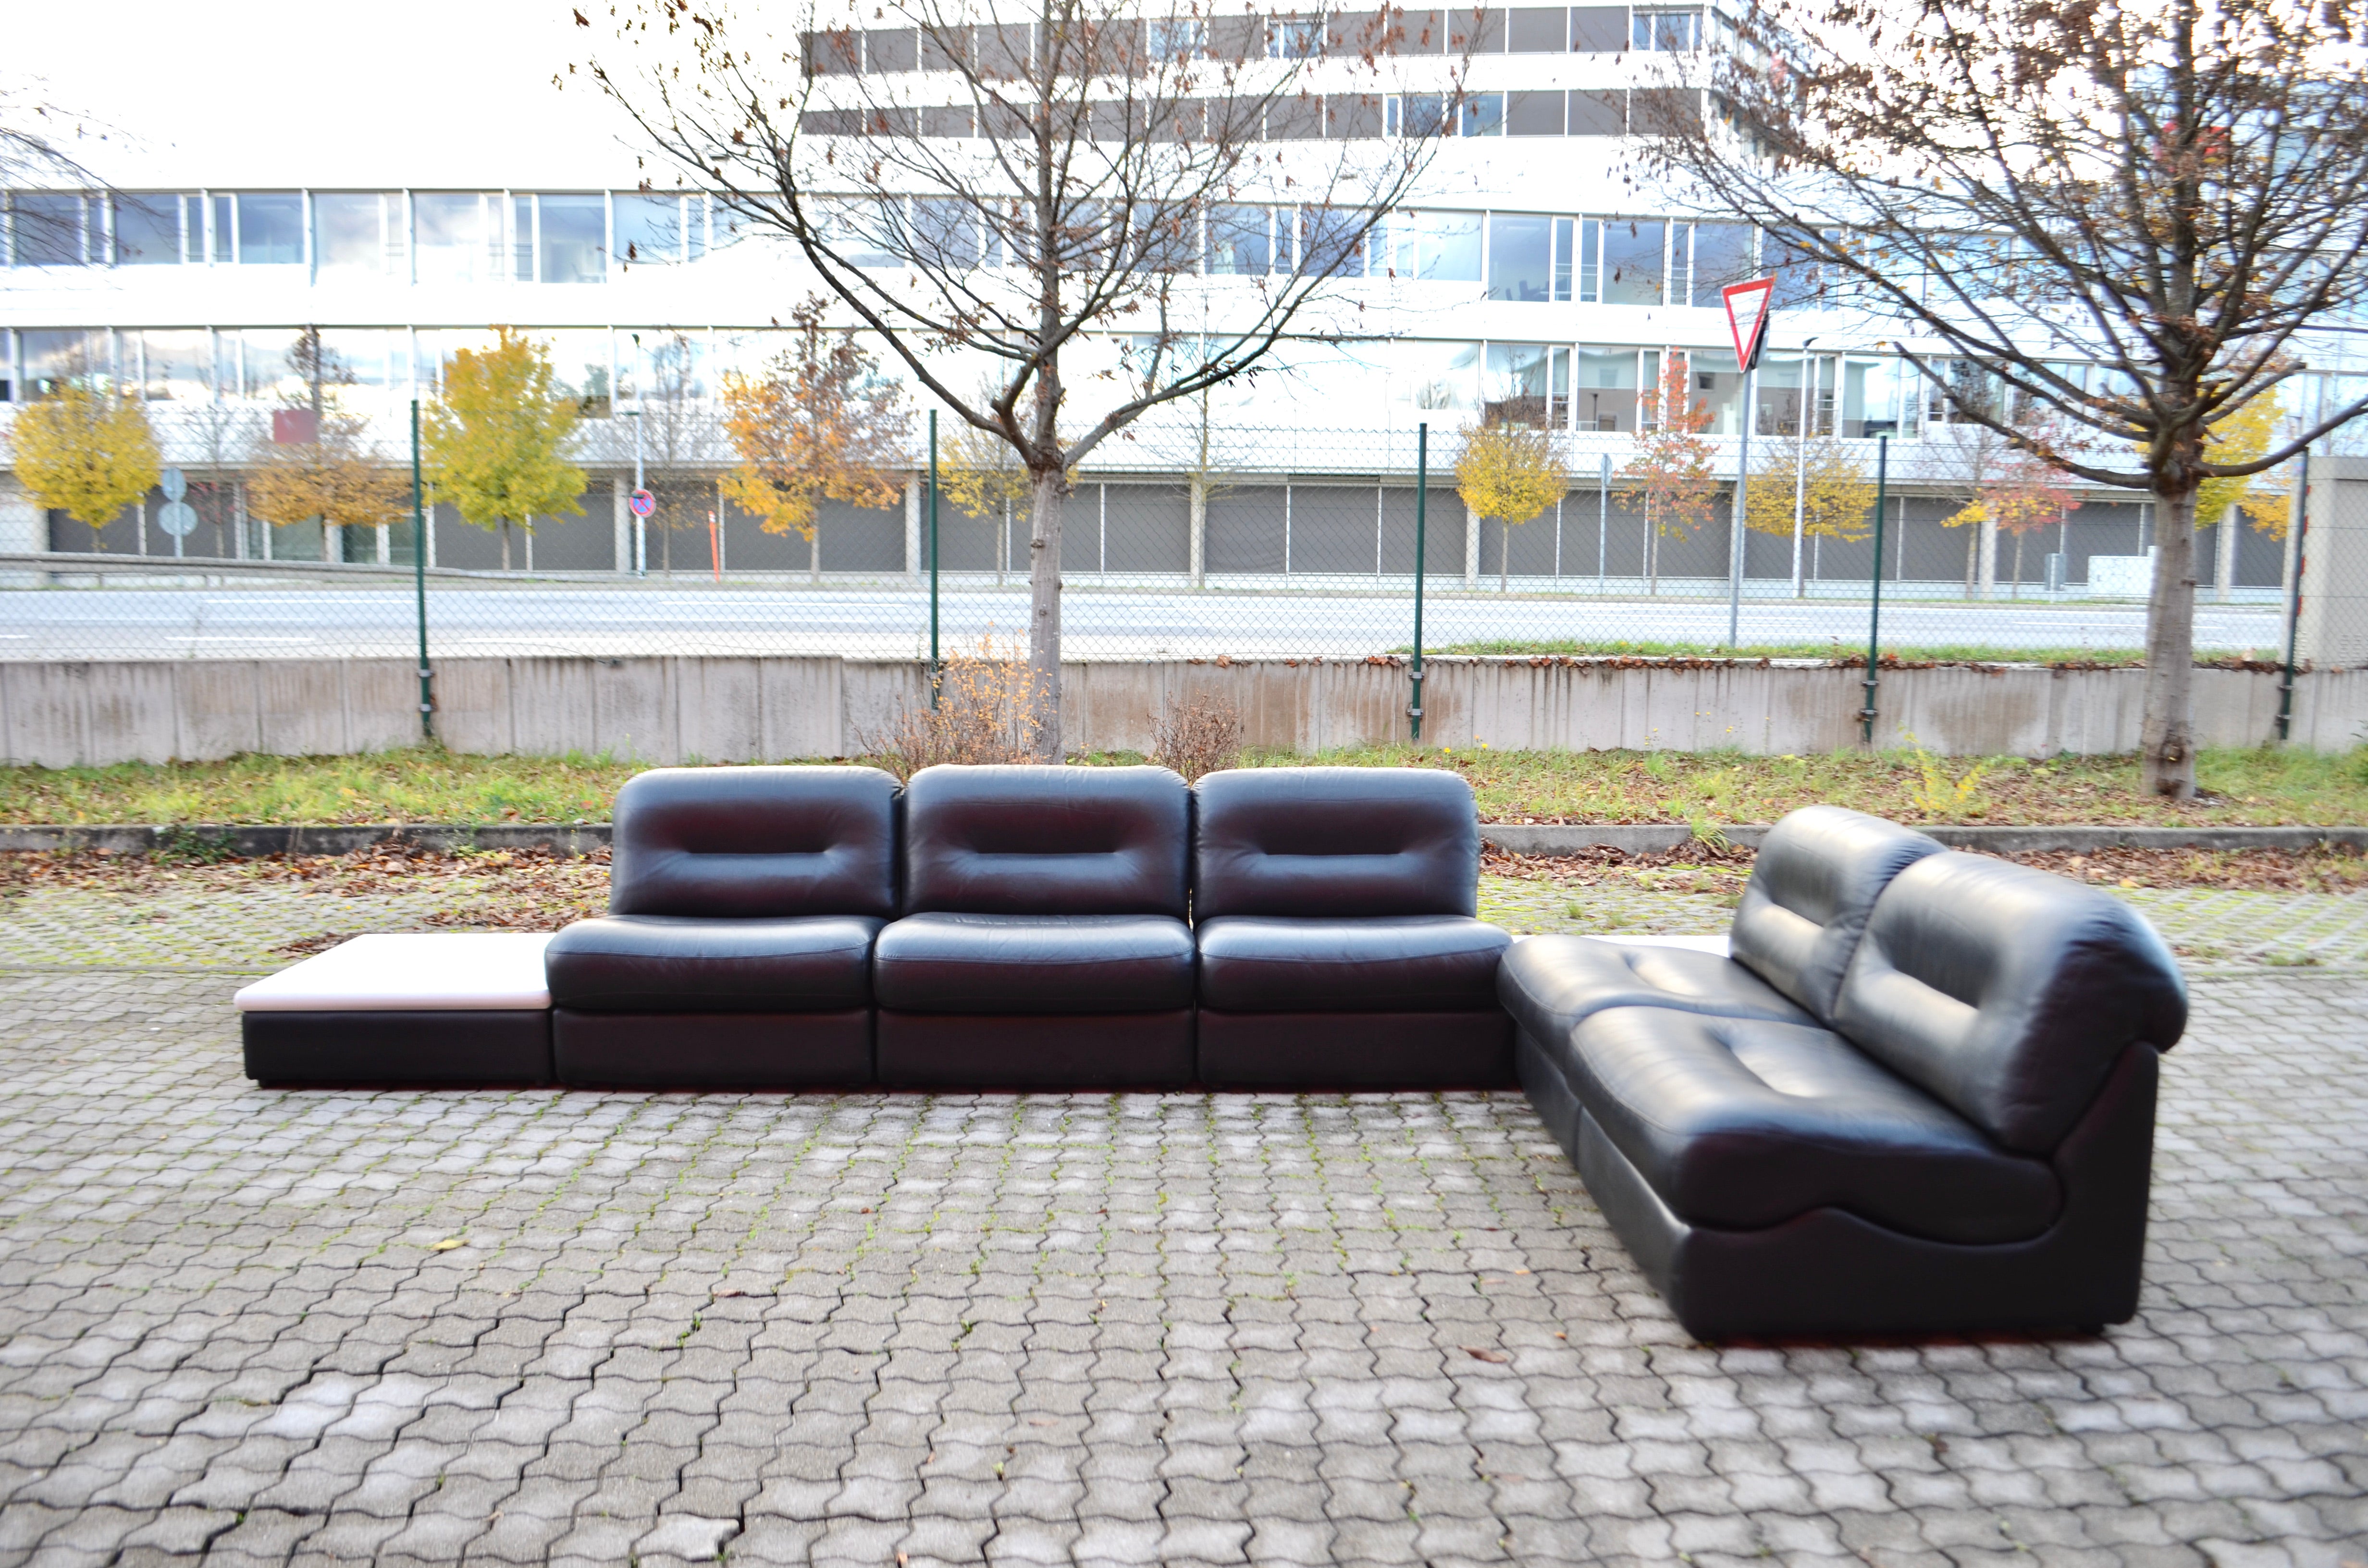 Ce superbe canapé sectionnel modulaire en cuir a été fabriqué en Allemagne.
Il s'agit d'un pur design des années 70 
Le cadre de chaque élément est en bois et il est recouvert de mousse et de cuir noir.
Les coussins d'assise sont amovibles.
Ce